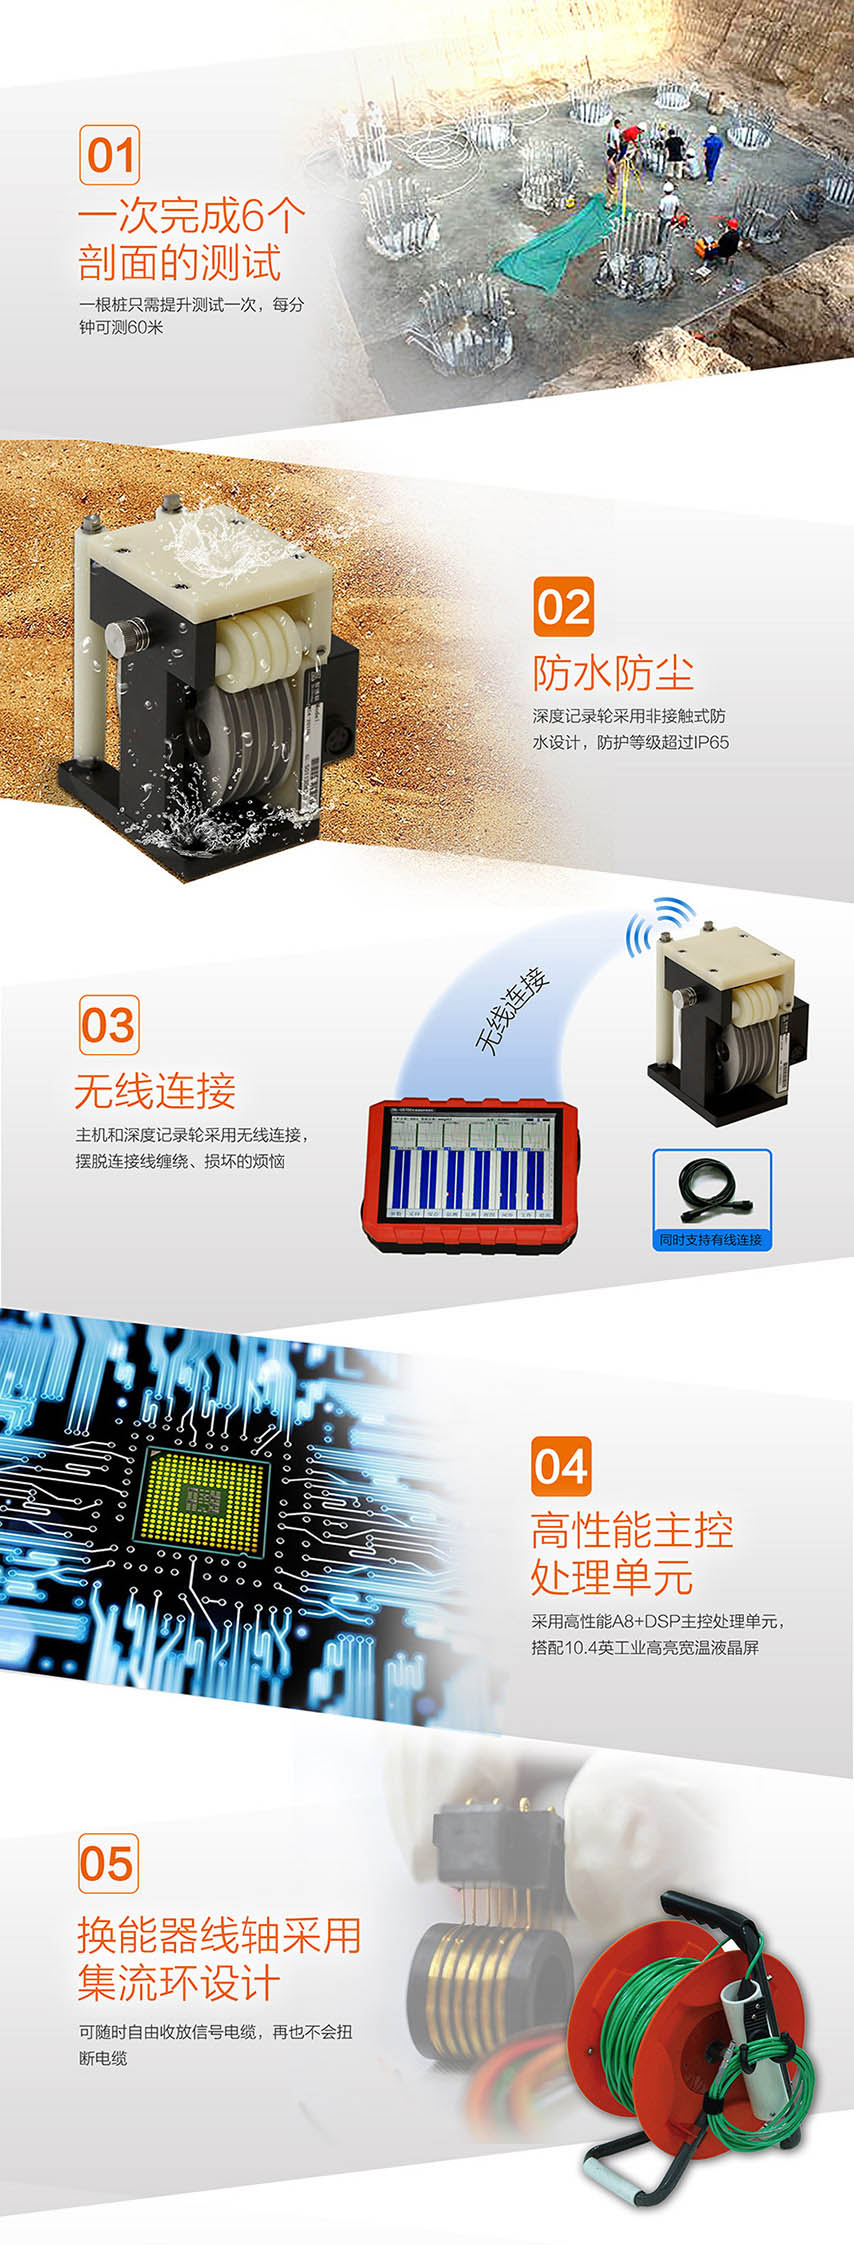 北京智博联ZBL-U5700多通道超声测桩仪2